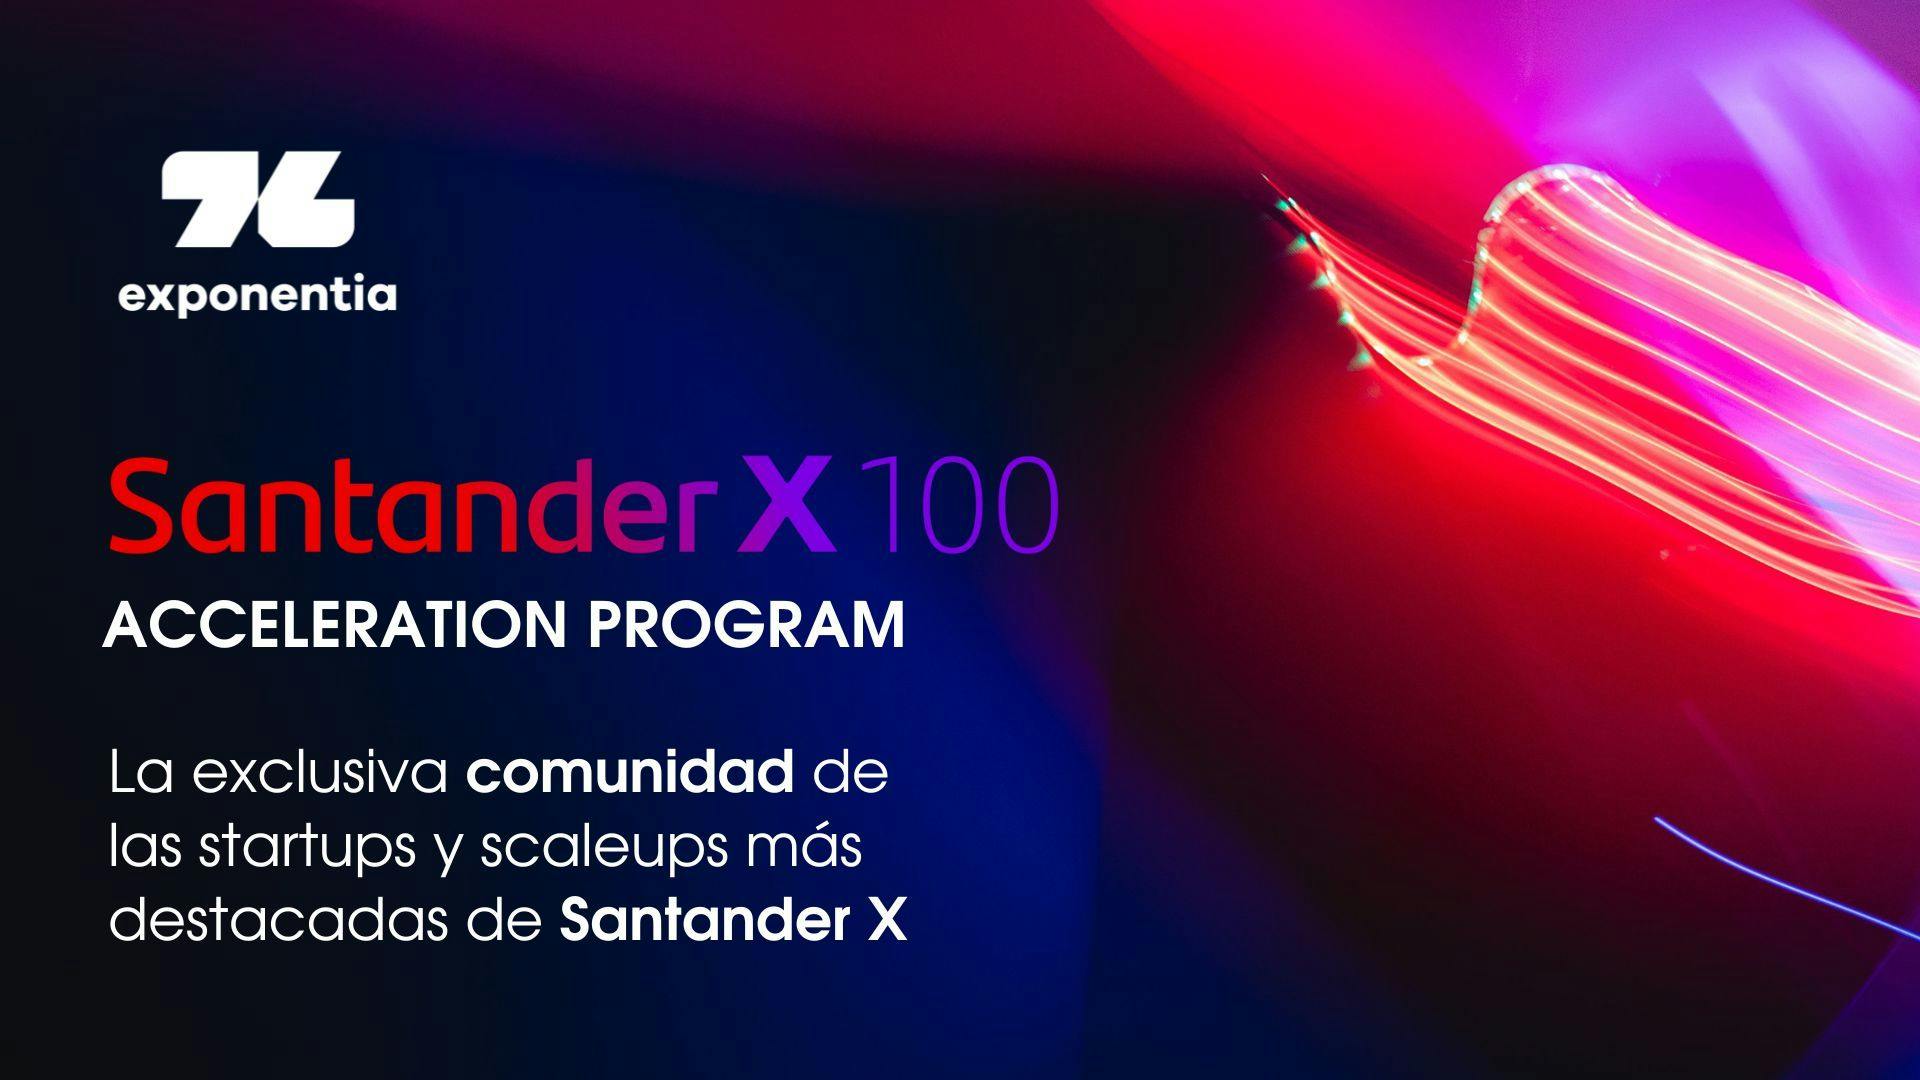 Santander X 100: La exclusiva comunidad de las scaleups y startups más destacadas de Santander X